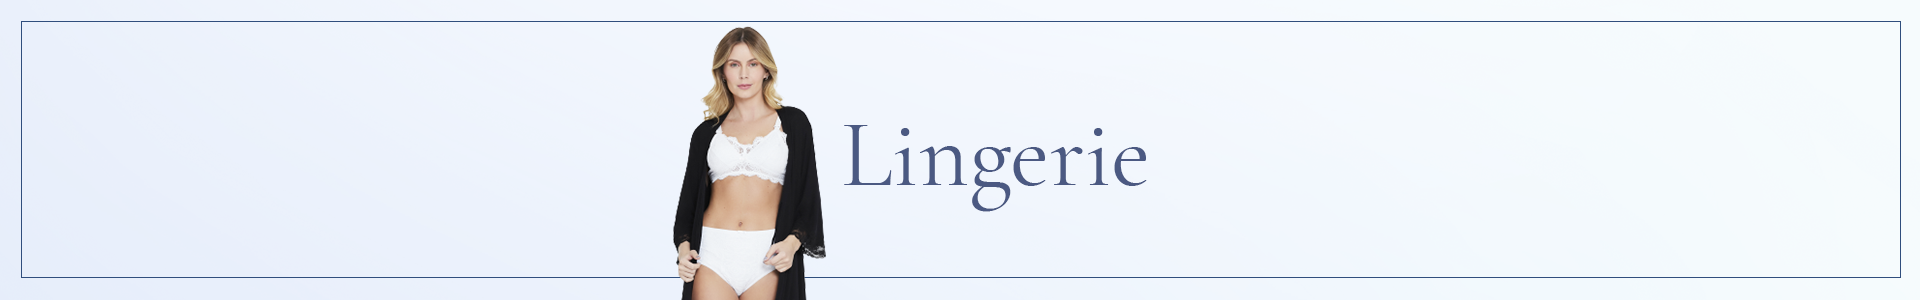 Banner Lingerie